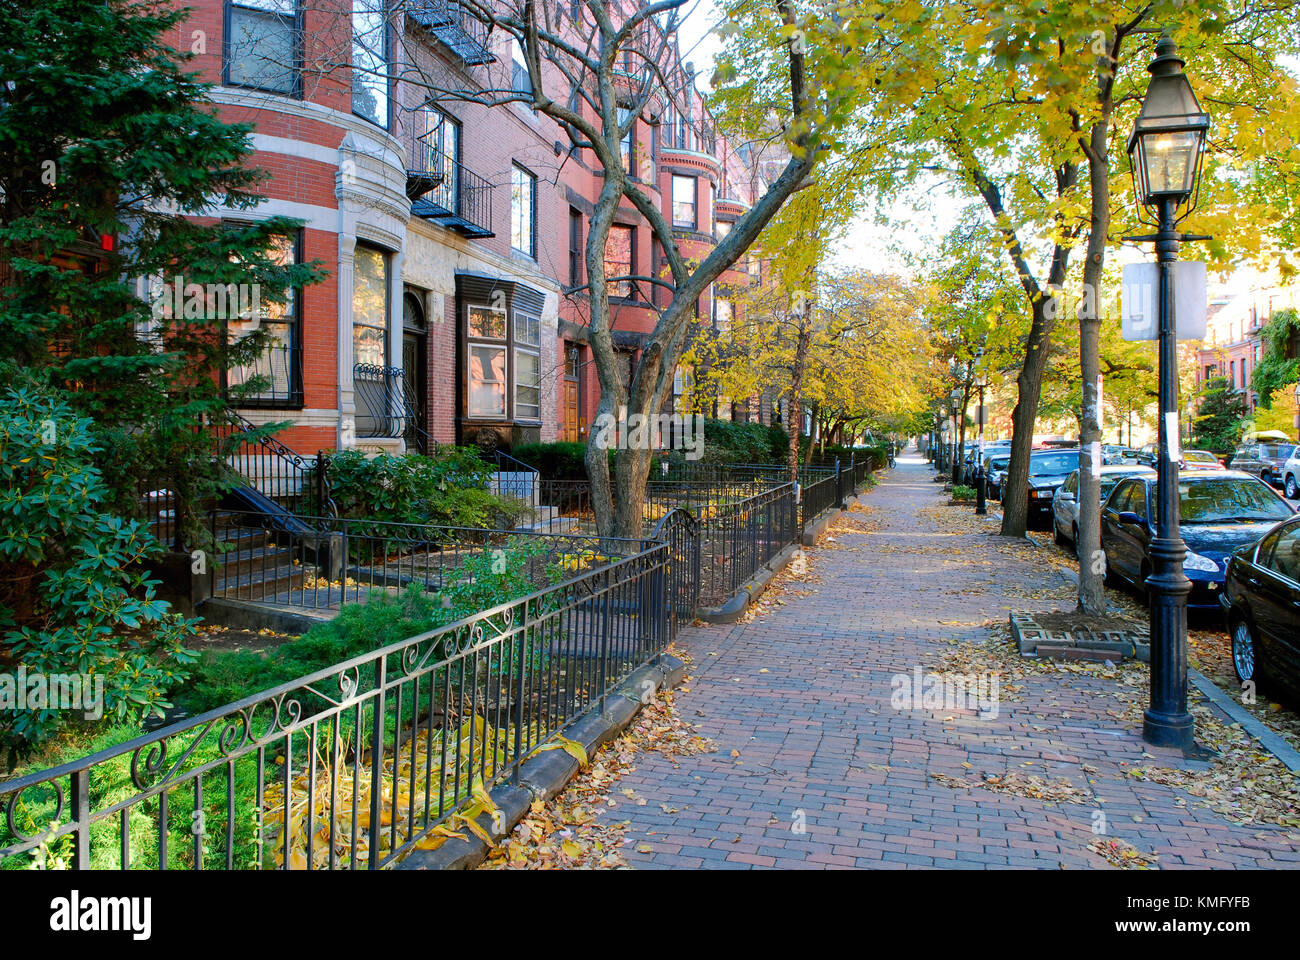 Back Bay in Boston im Herbst. viktorianischen Stadthäusern, Bügeleisen Zäune, Ziegel, Bürgersteig, Straßenlaternen, Herbst Laub. Stockfoto